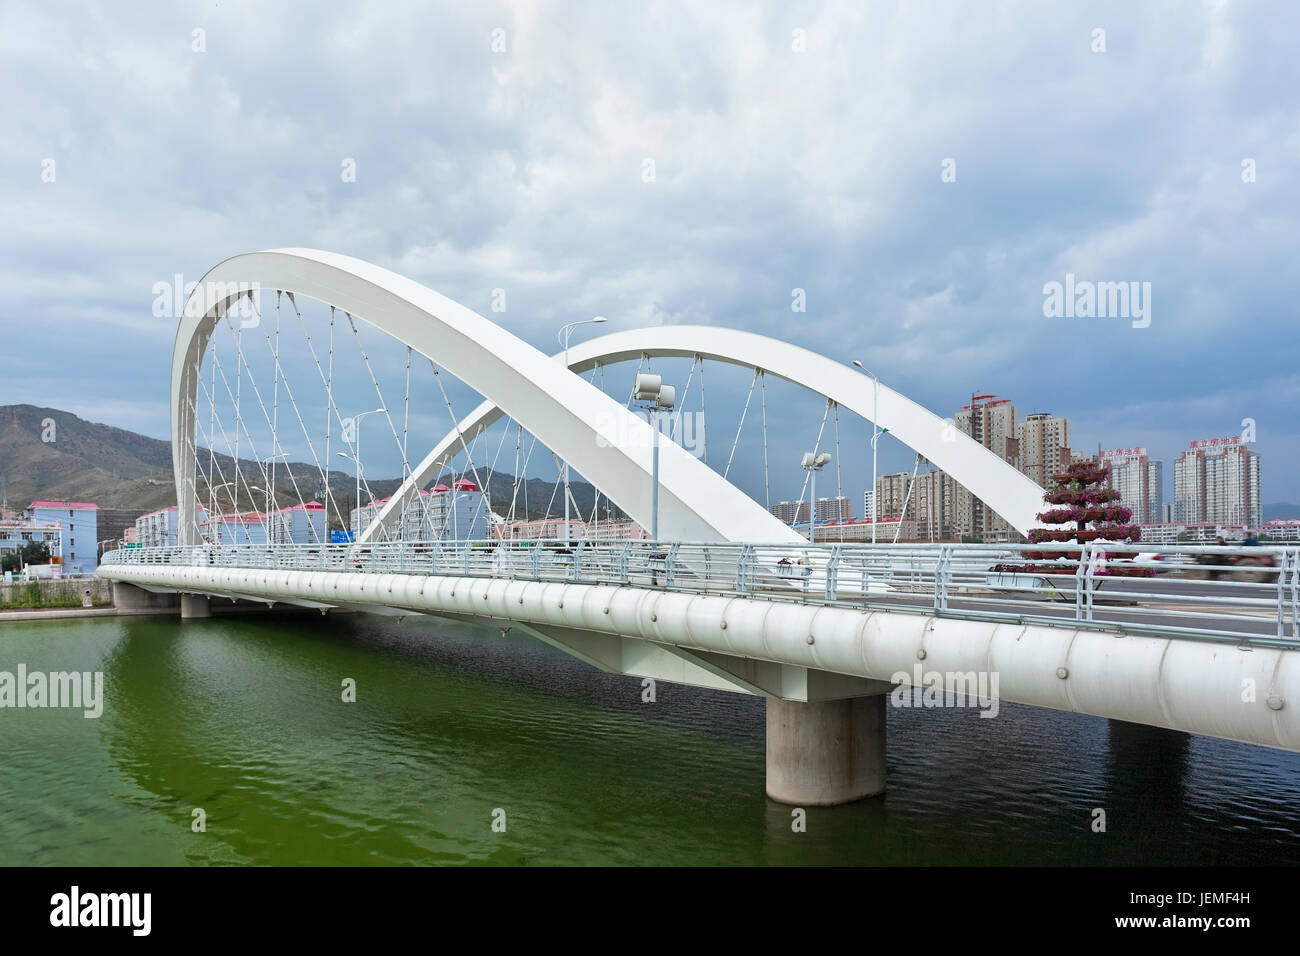 White modern bridge crossing a green canal in Zhangjiakou, Hebei Province, China. Stock Photo